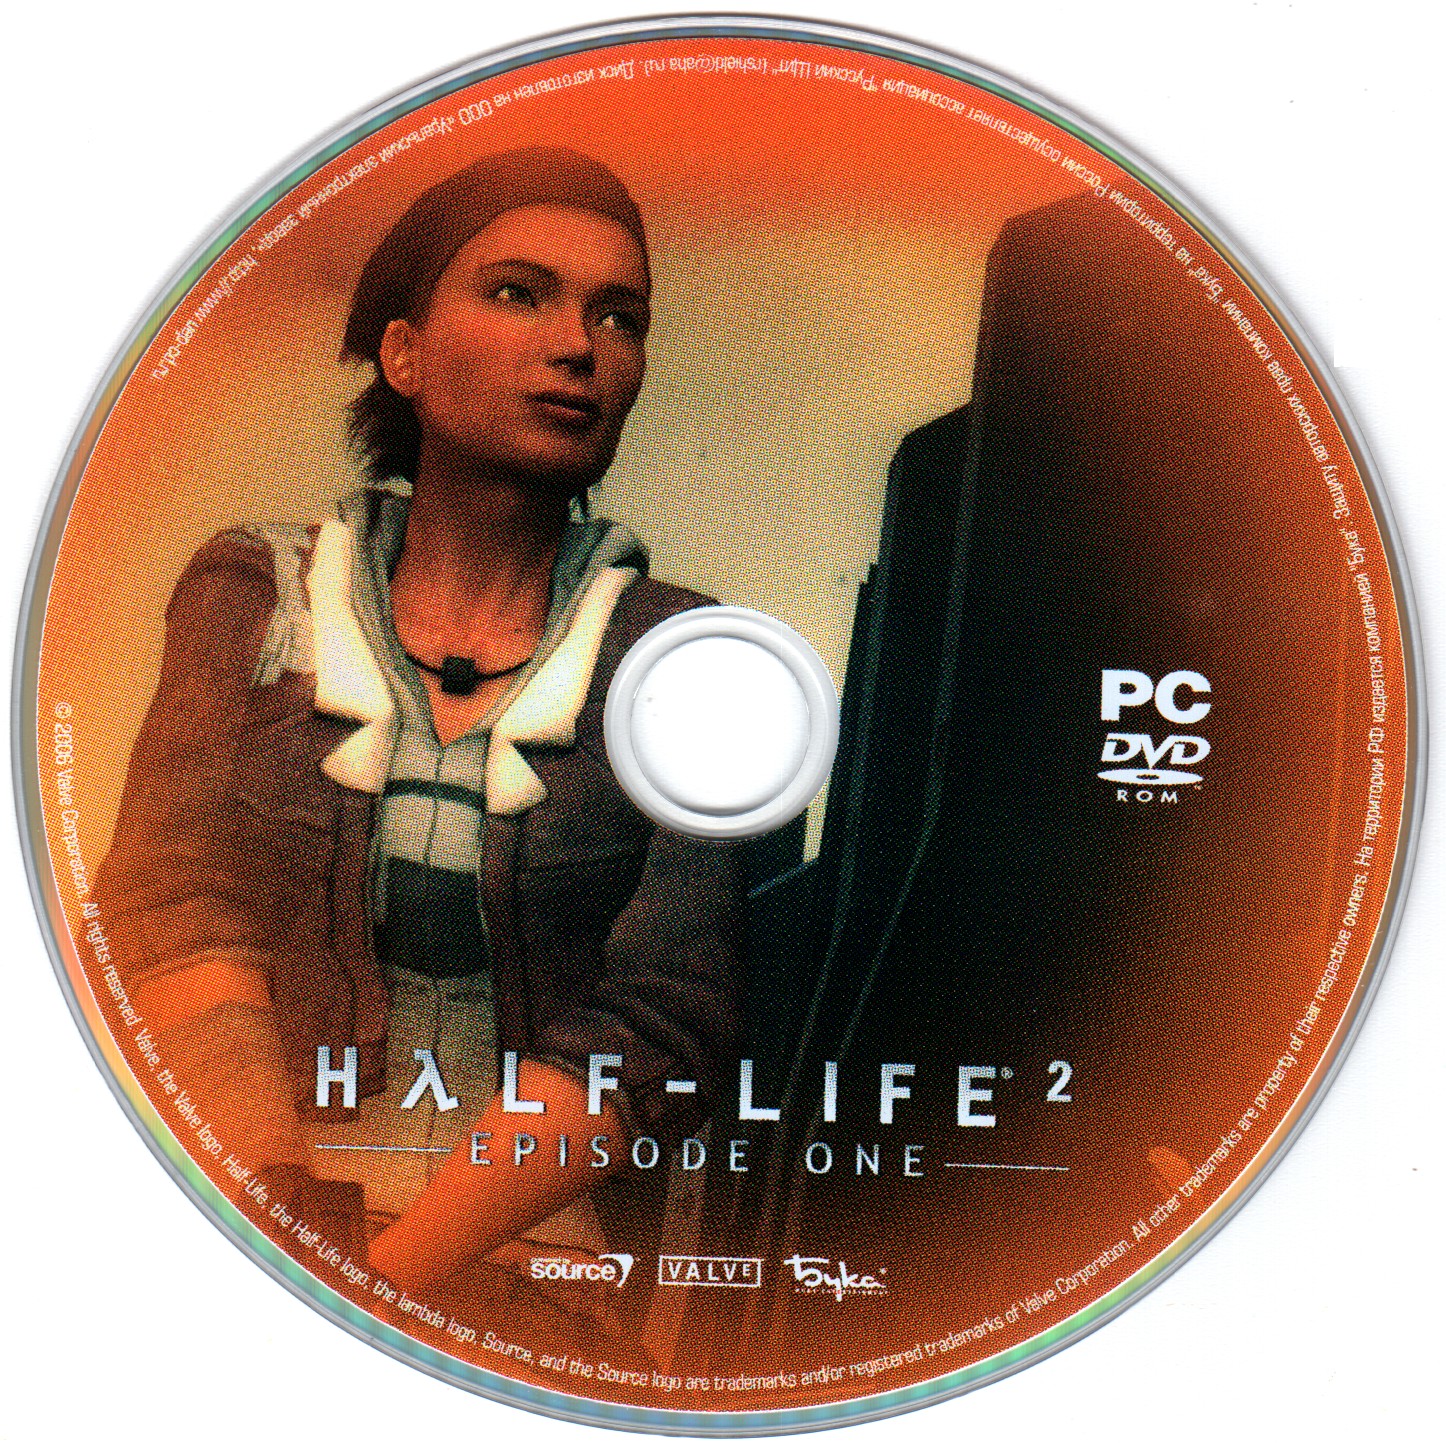 Диск half life. Half Life 2 Episode one диск. Half Life 2 бука диск. Half-Life 2 Episode one обложка. Пиратских обложки дисков half-Life.